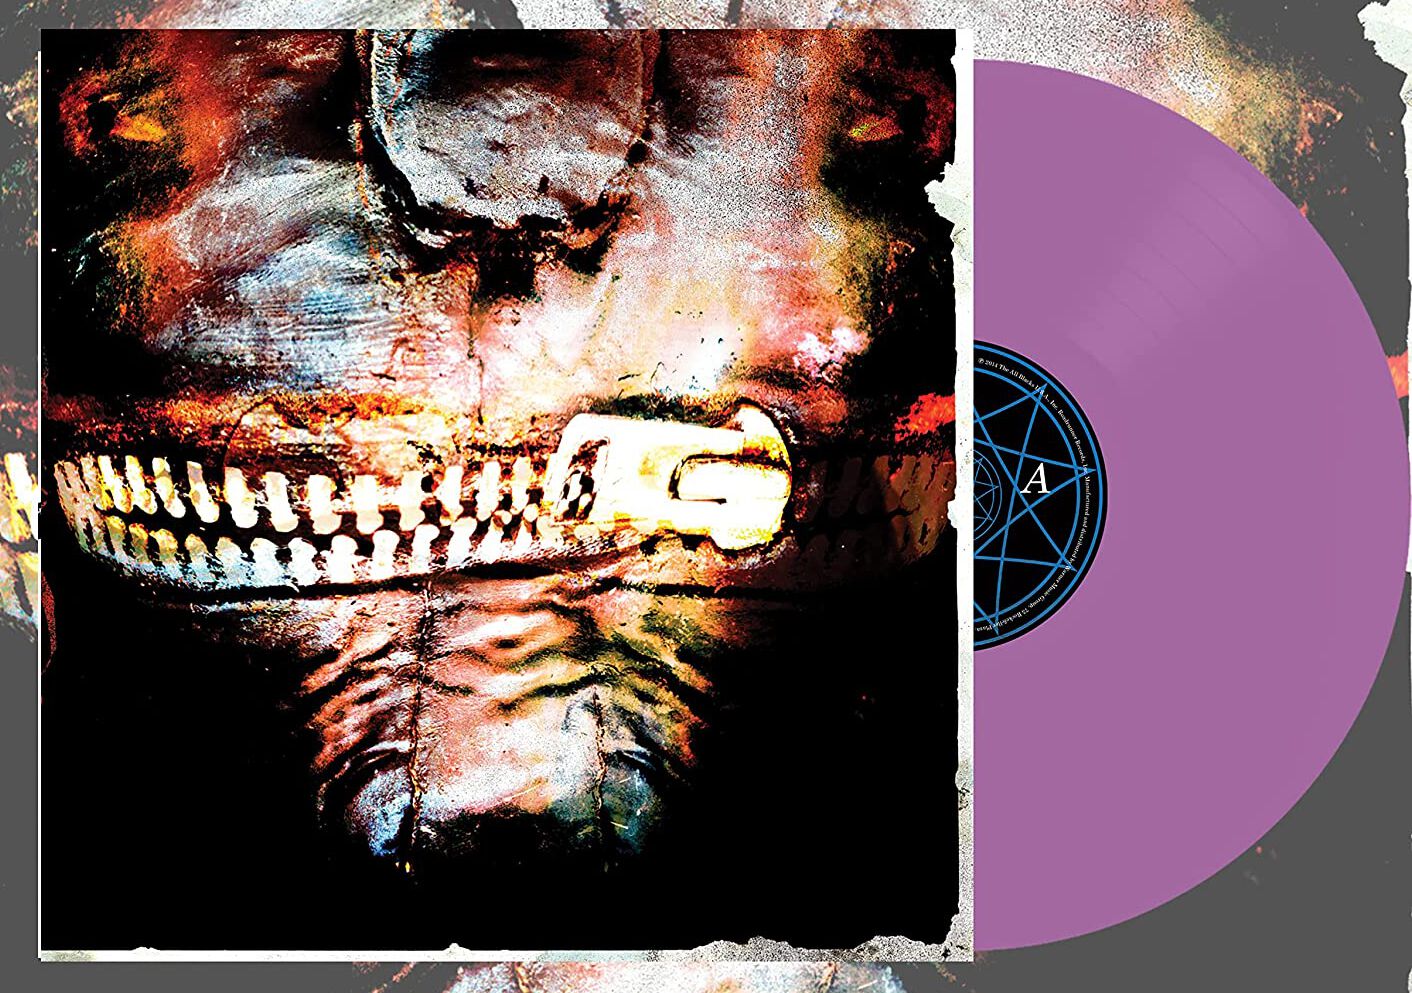 Slipknot Vol.3 The subliminal verses LP coloured